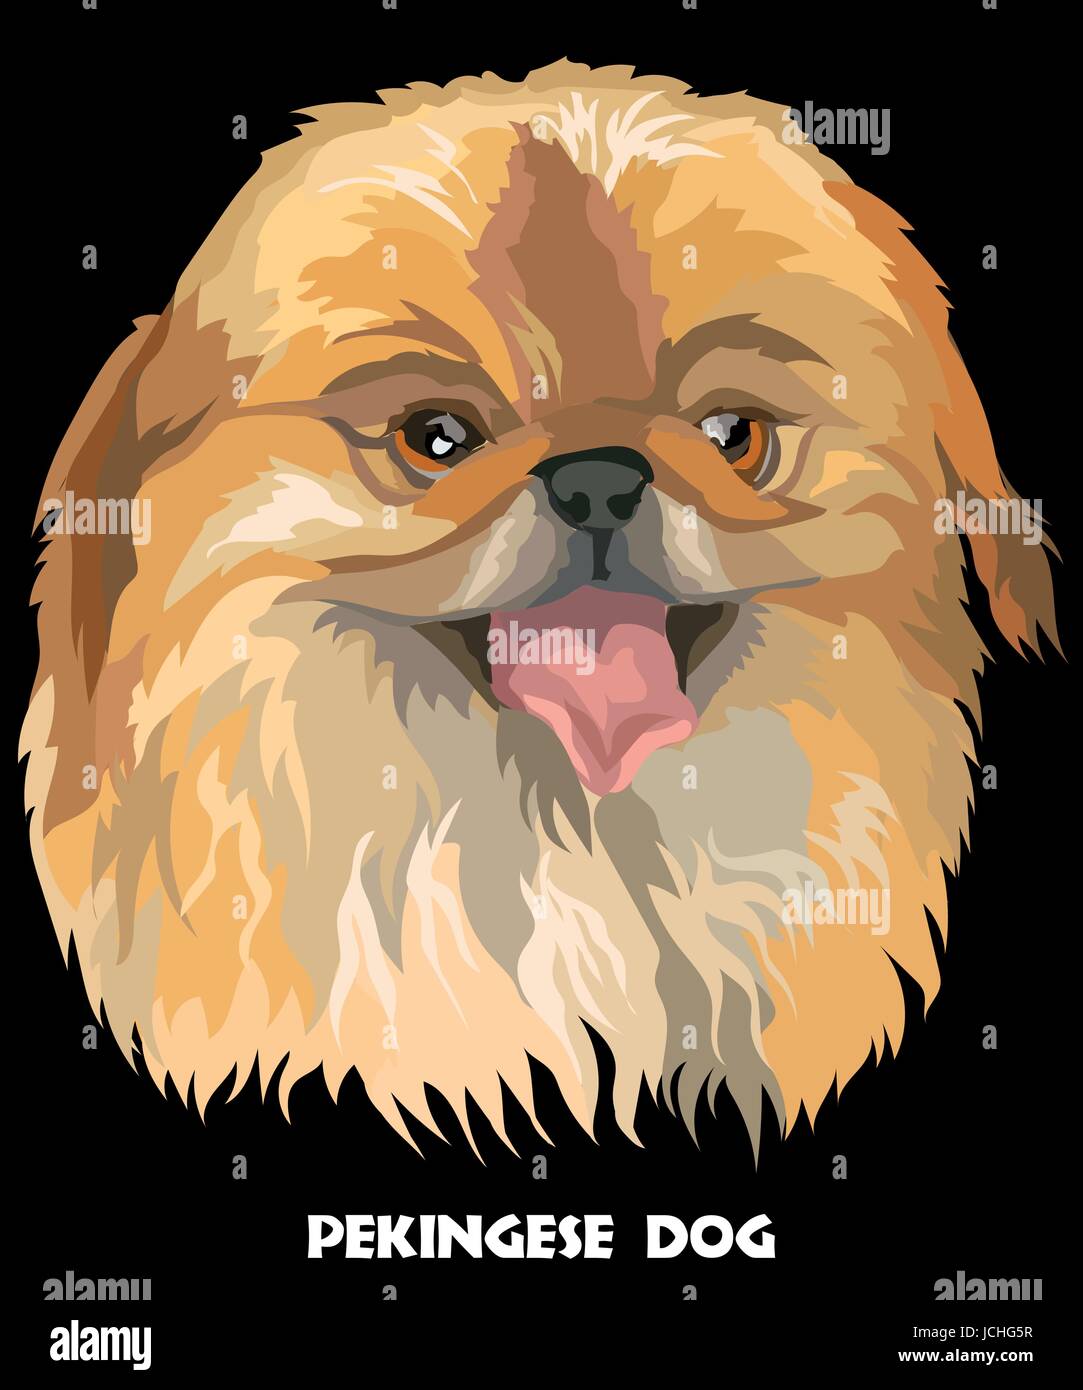 Farbigen Porträt von Pekinese Hund Vektor Illustration auf schwarzem Hintergrund Stock Vektor